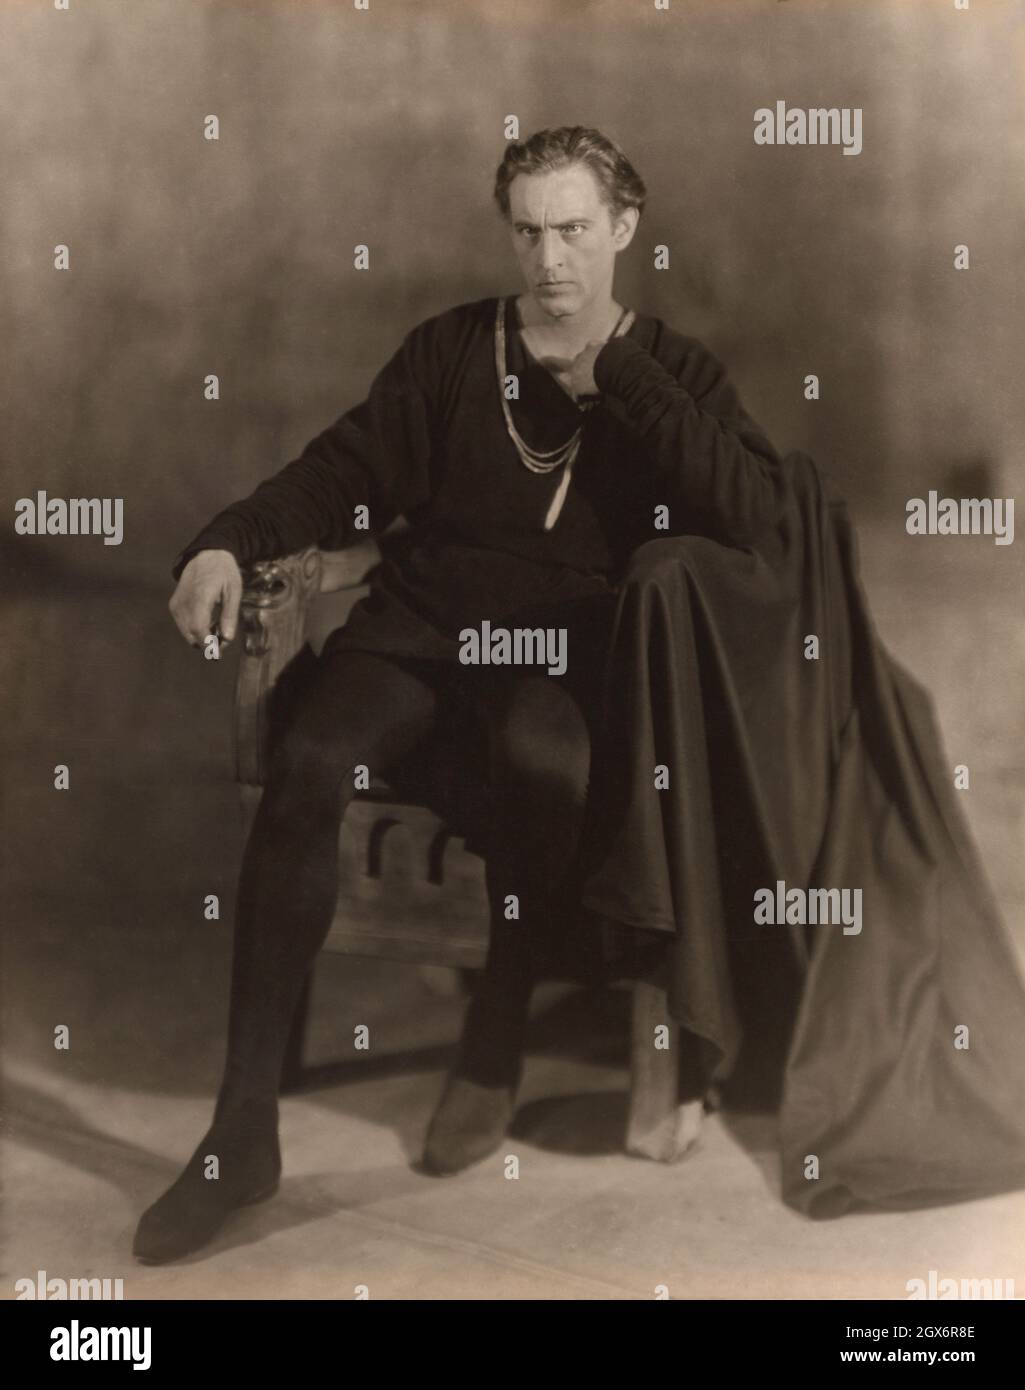 John Barrymore (1882-1942), acteur américain, Portrait assis en longueur, Francis Joseph Brugiere, 1922 Banque D'Images